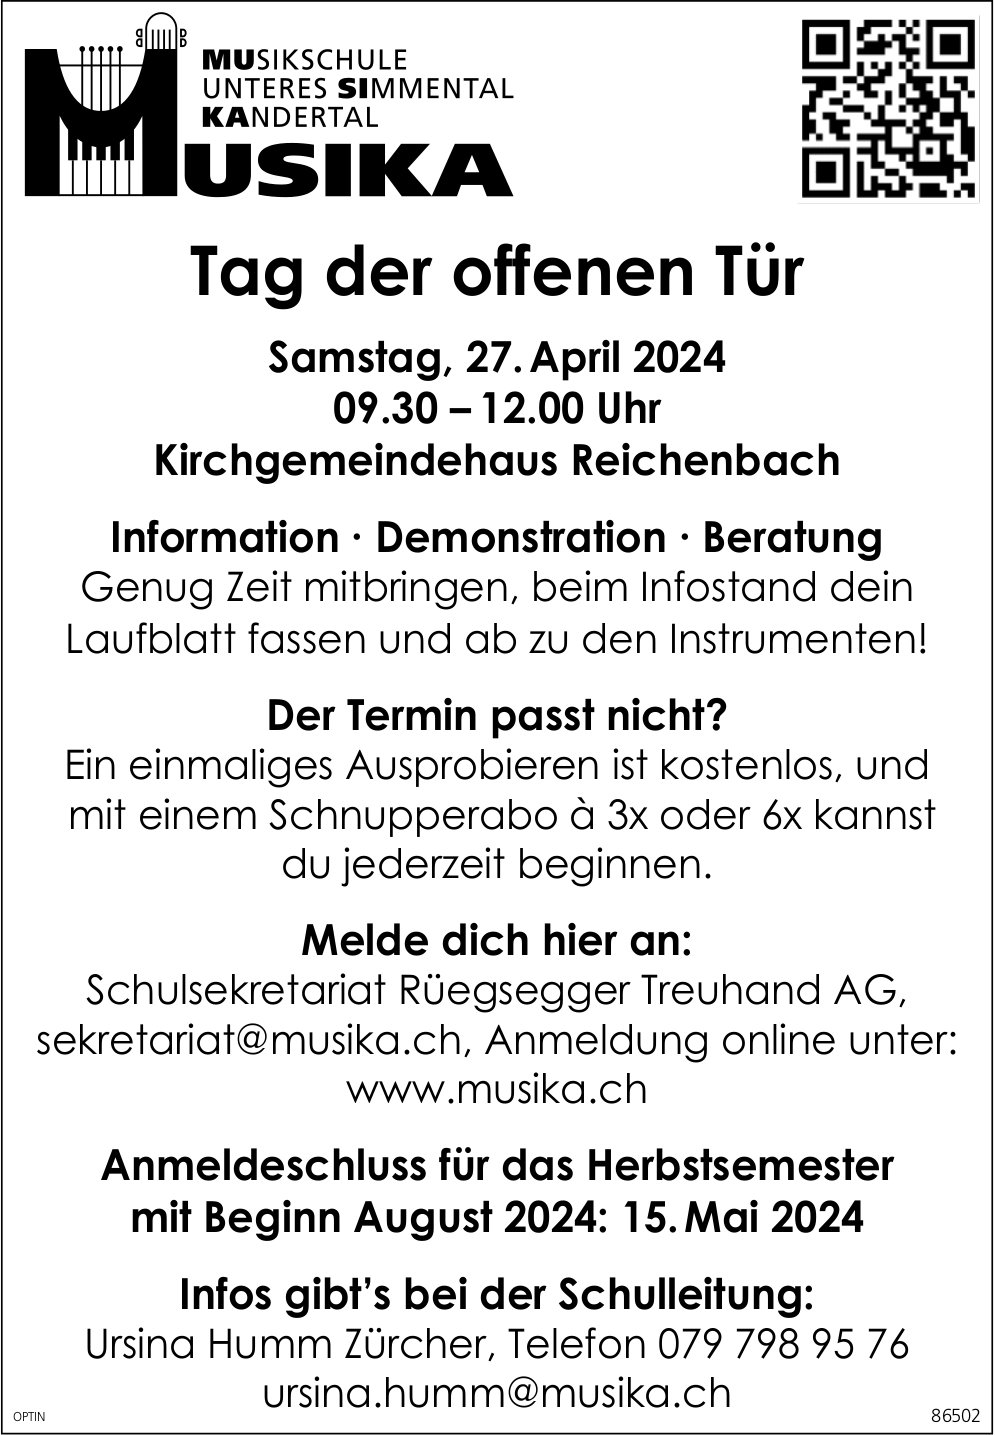 Tag der offenen Tür Musika, 27. April, Kirchgemeindehaus, Reichenbach